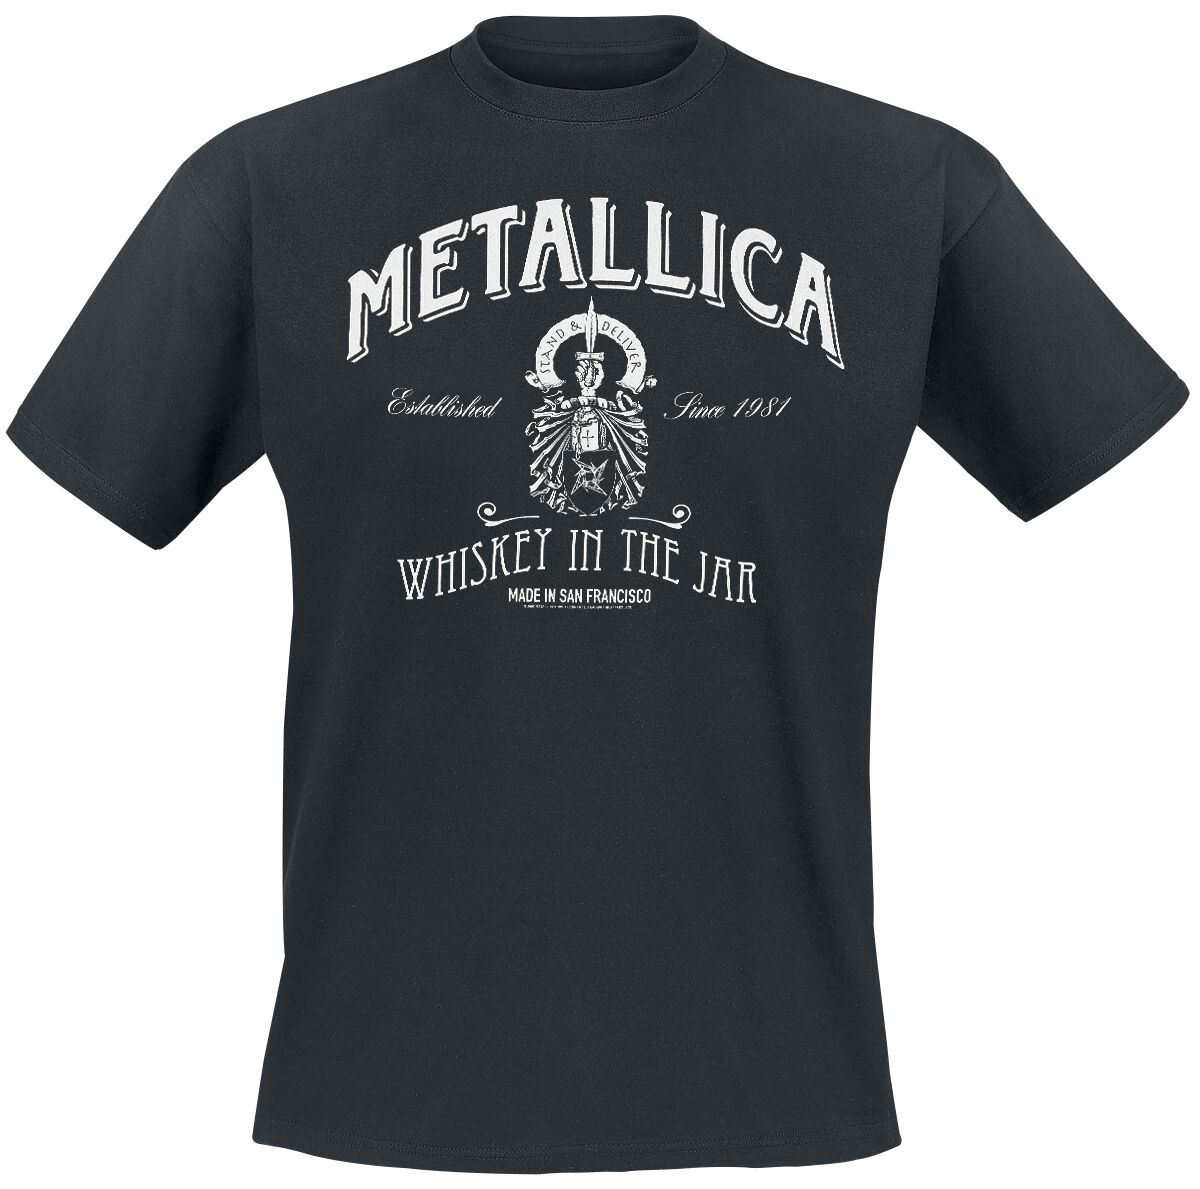 Metallica T-Shirt - Whiskey In the Jar - S bis 5XL - für Männer - Größe 3XL - schwarz  - Lizenziertes Merchandise!